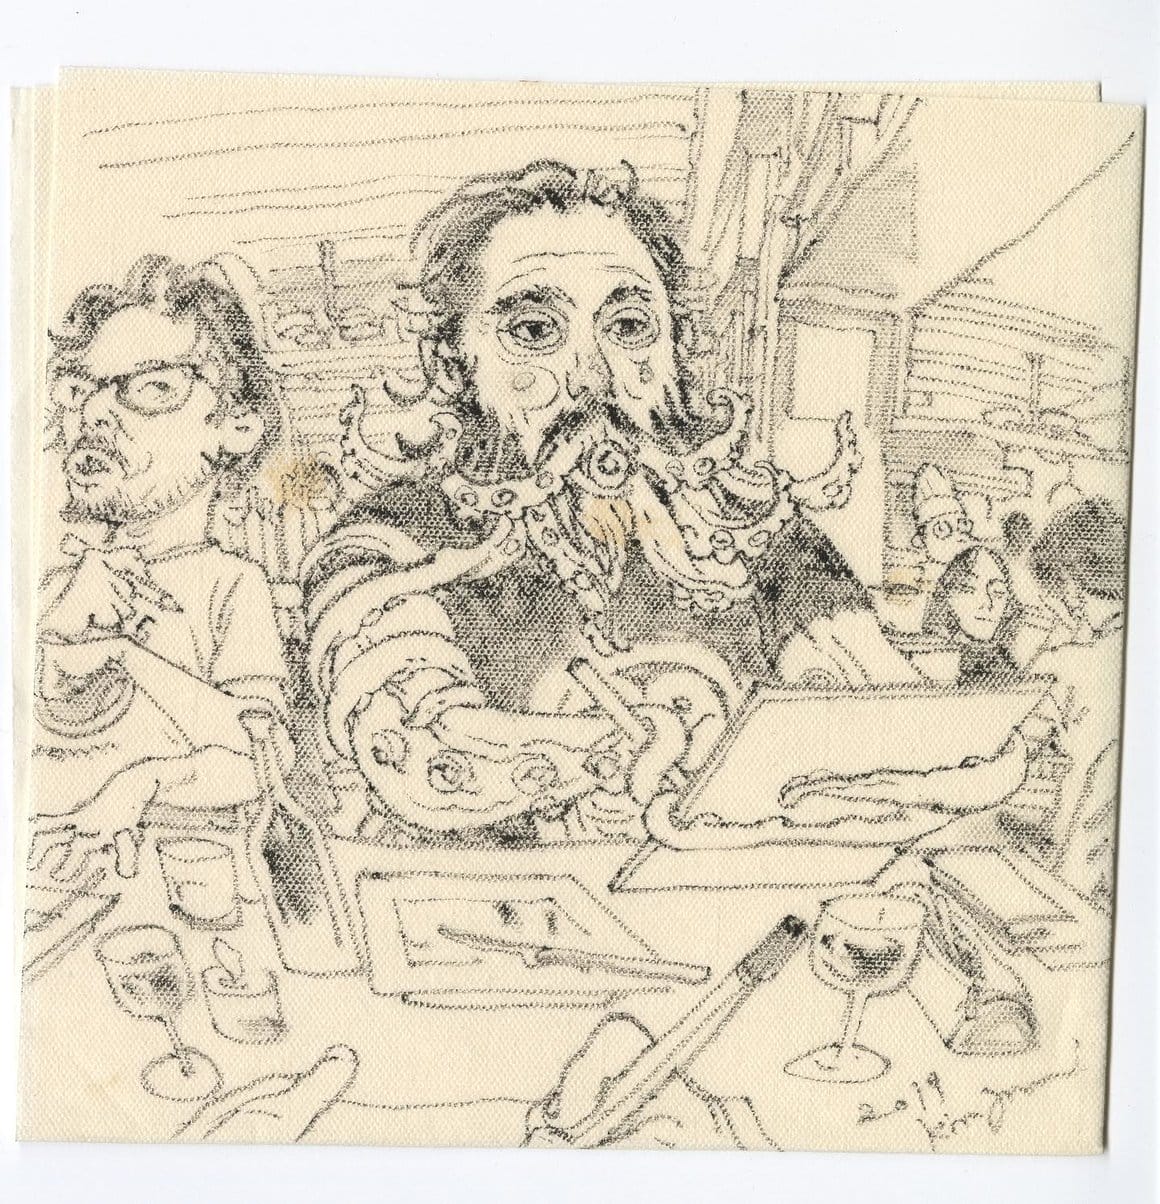 Croquis de plusieurs personnes dans un restaurant. Un homme aux bras et à la barbe tentacules dessine sur une planche